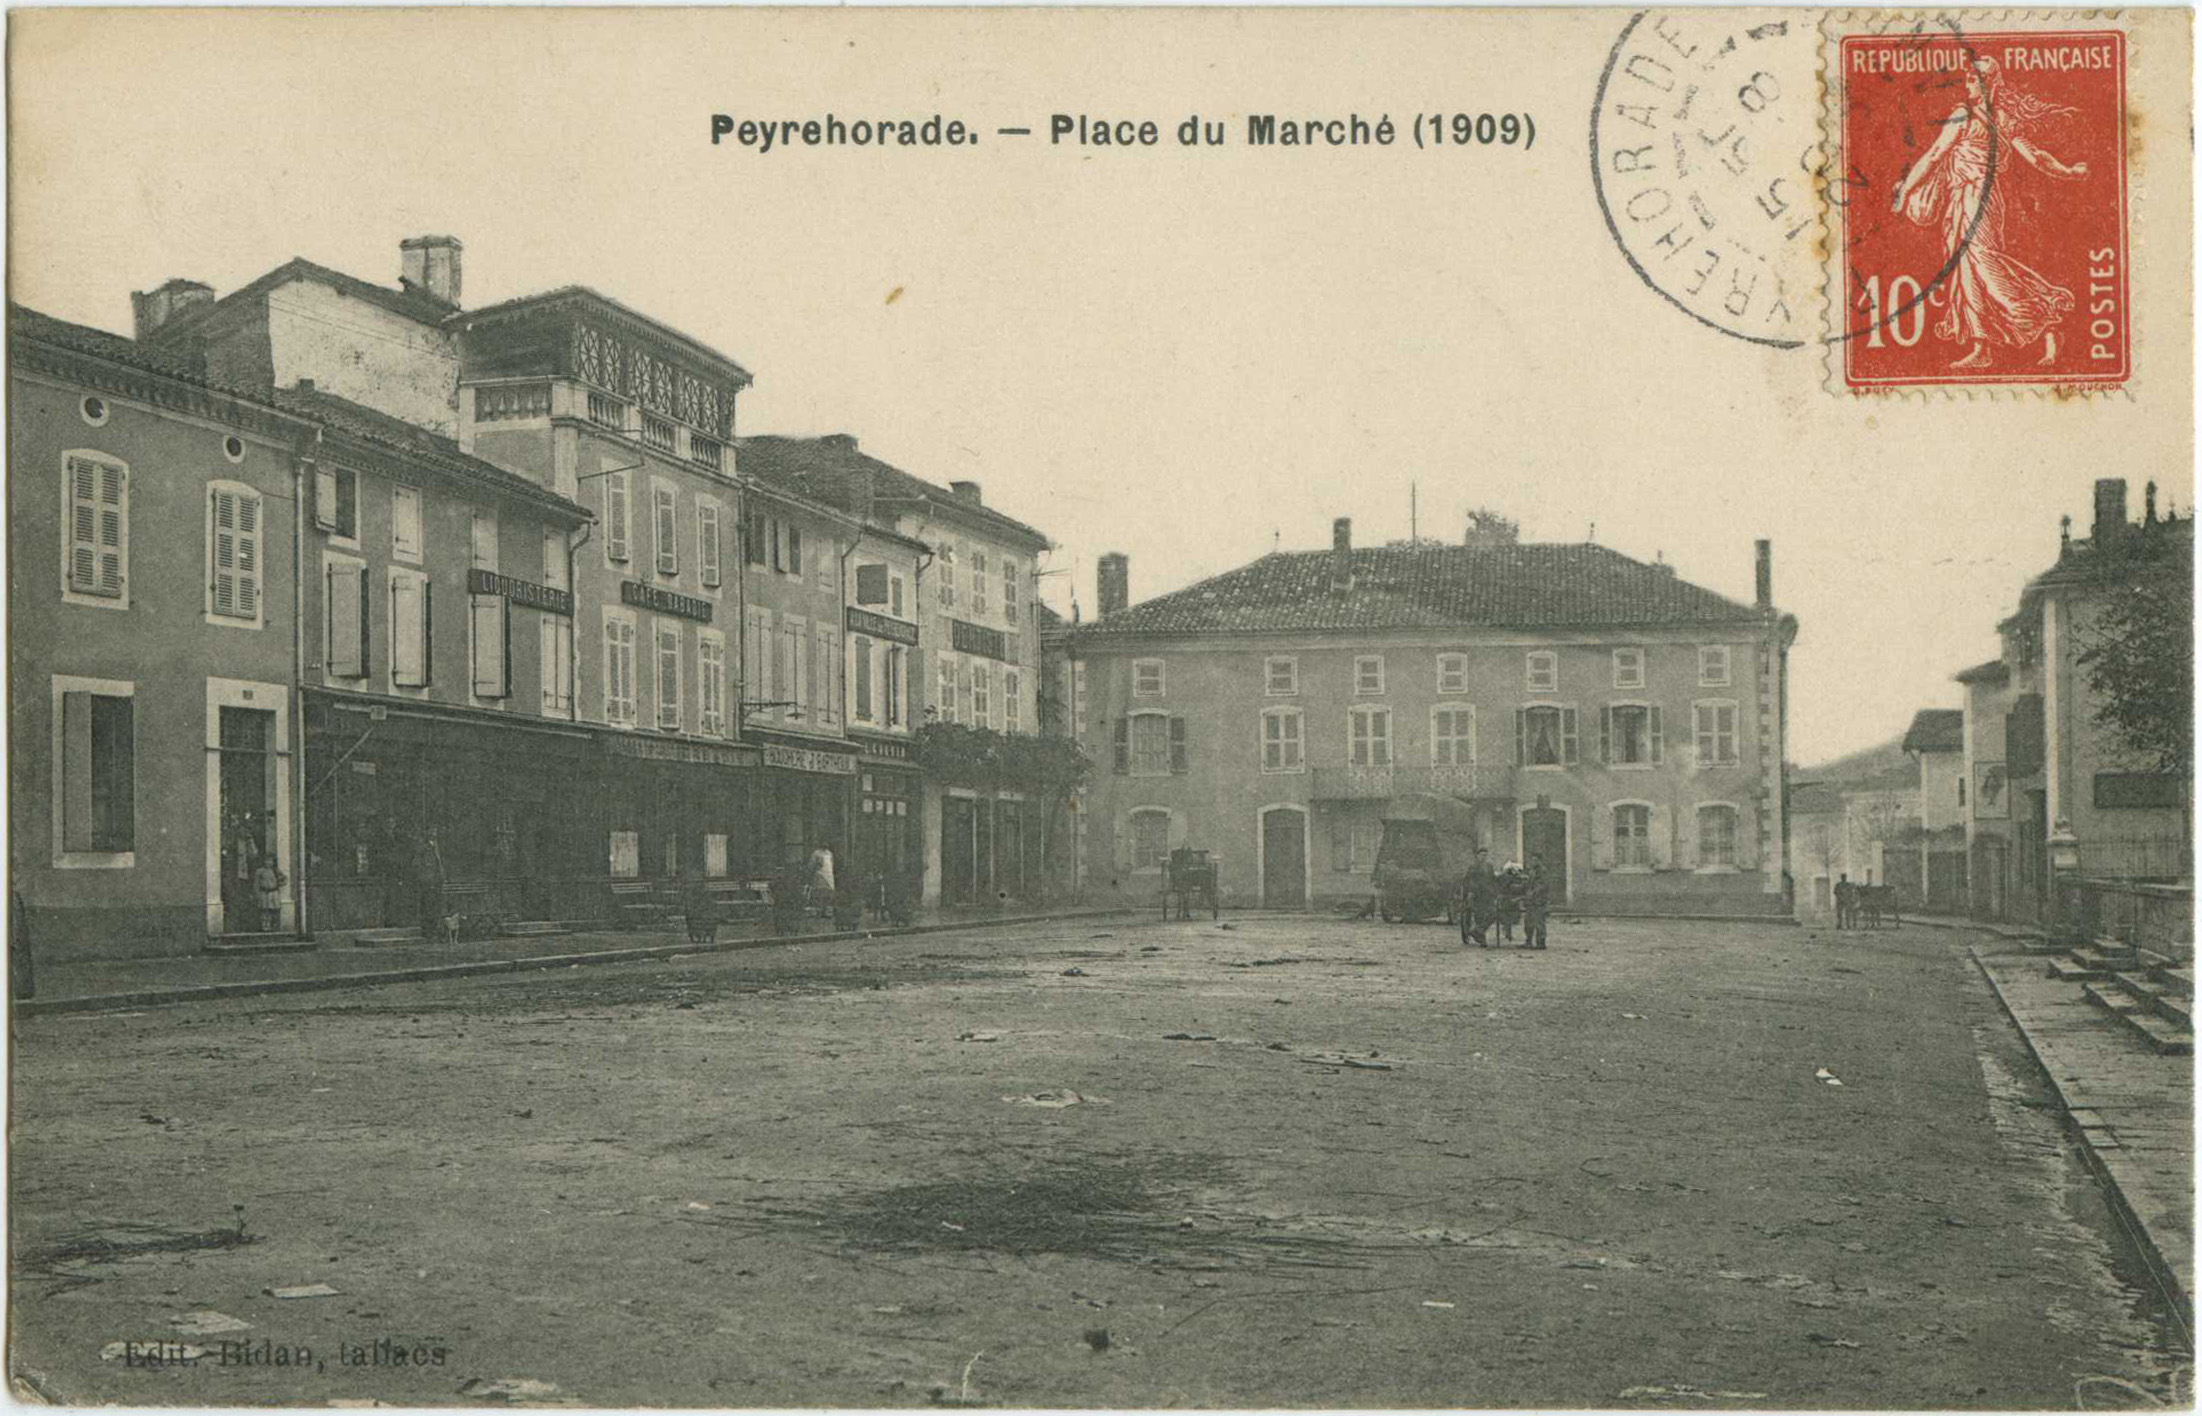 Peyrehorade - Place du Marché (1909)